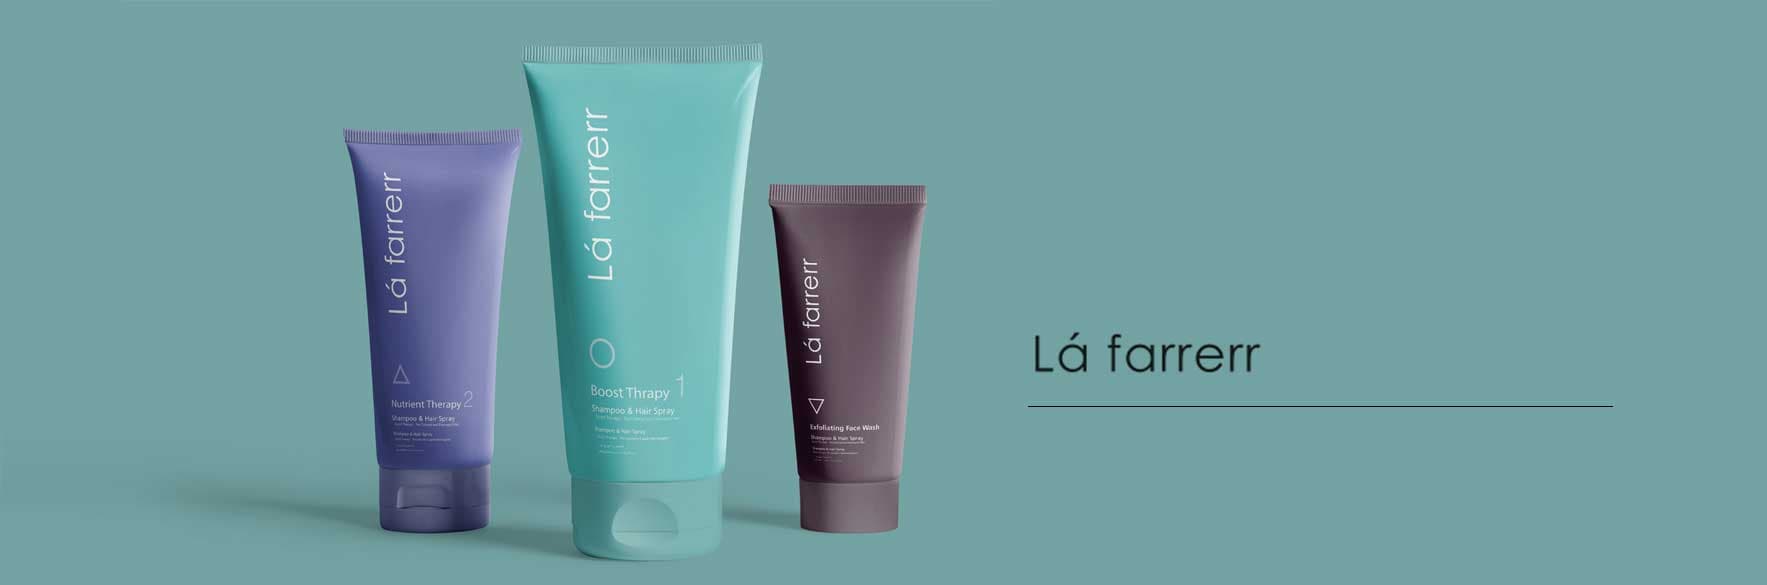 محصولات لافارر LA FARRERR جدید 2023 با بهترین قیمت